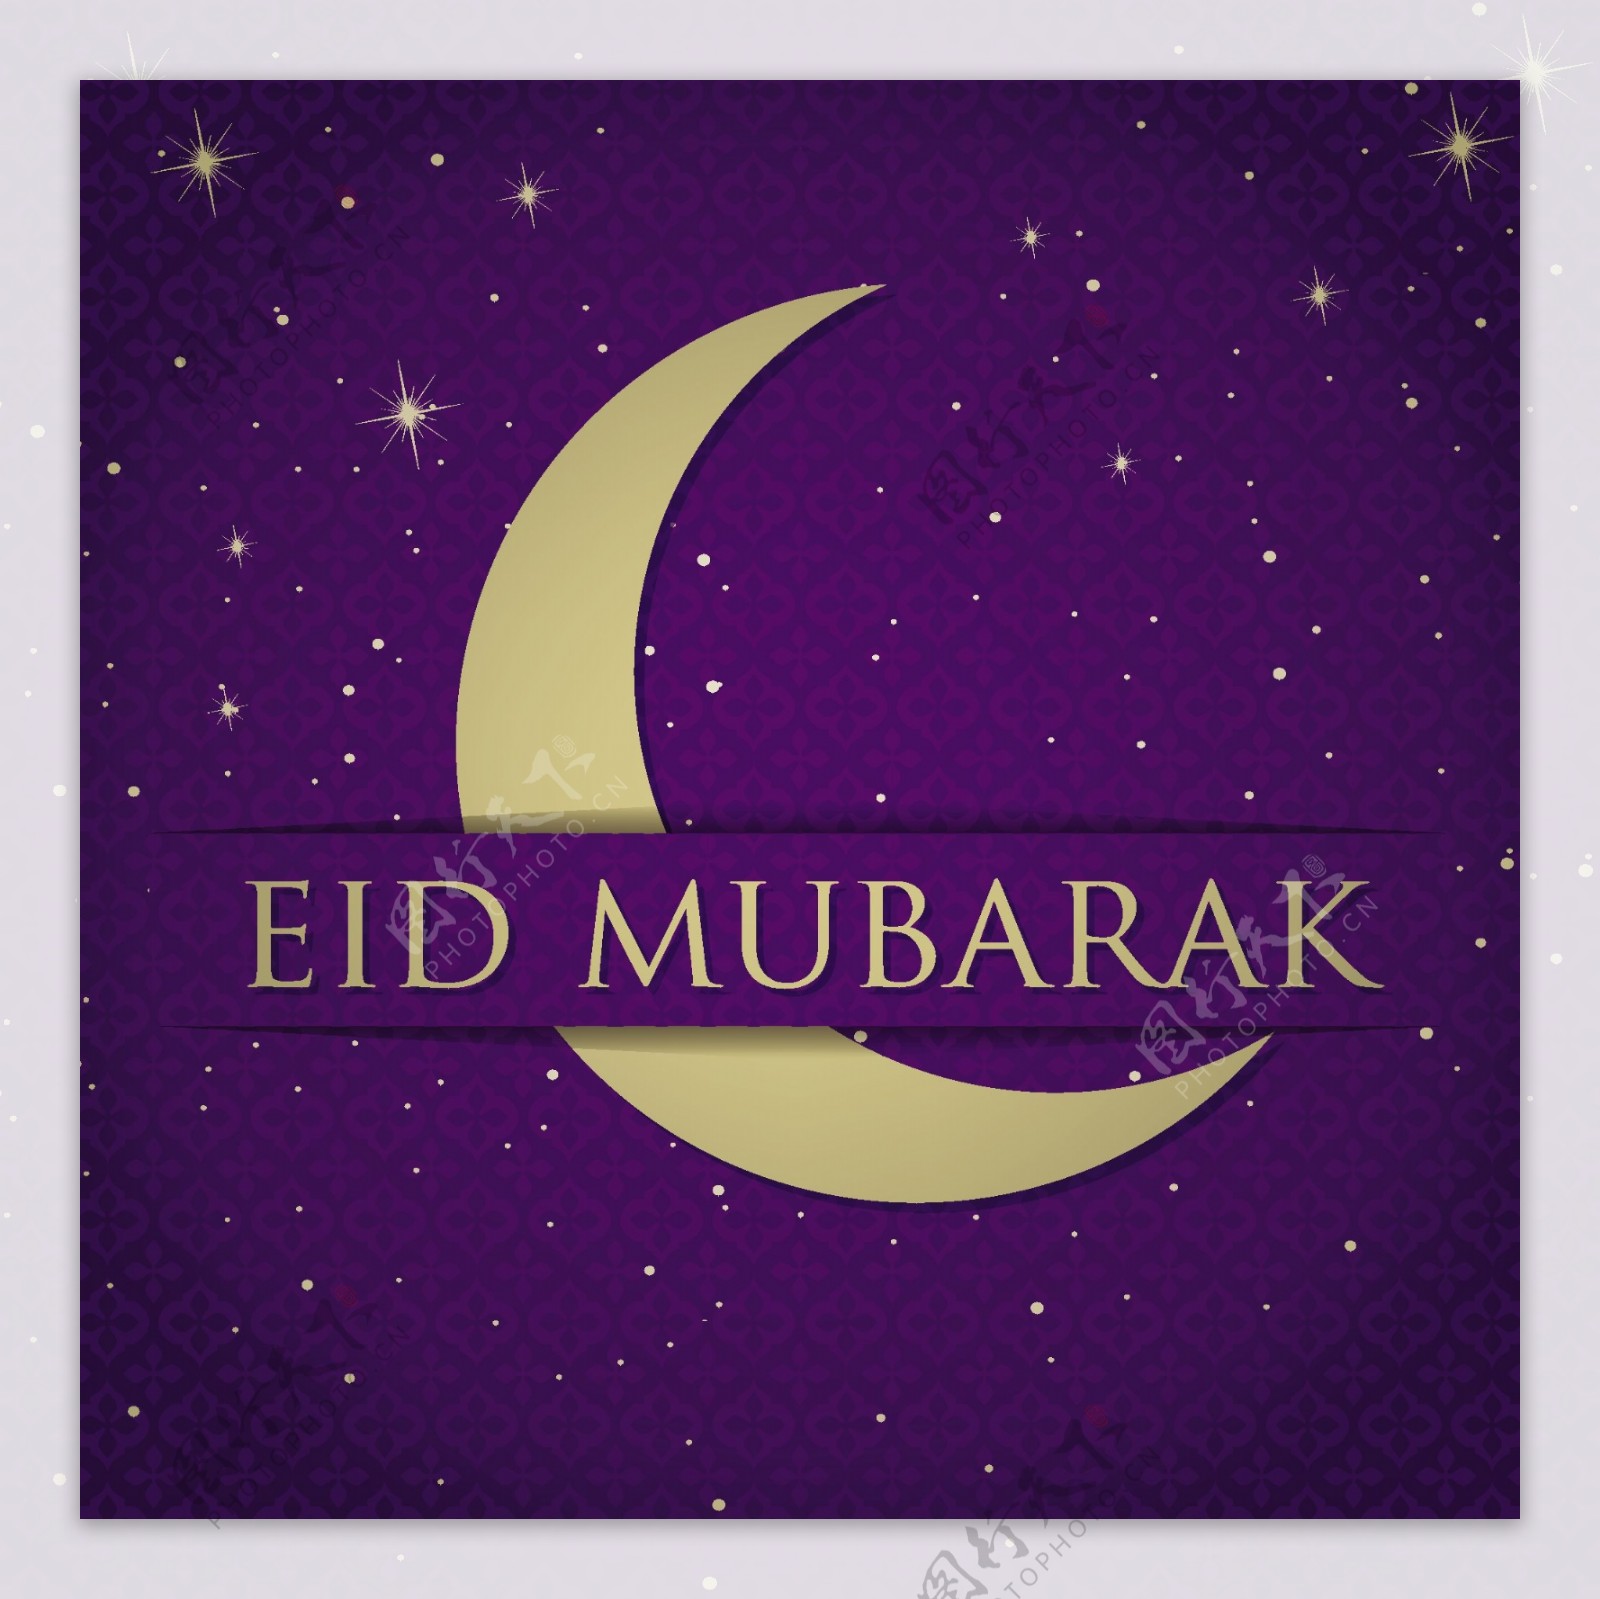 金新月开斋节Eid穆巴拉克祝福矢量格式的卡